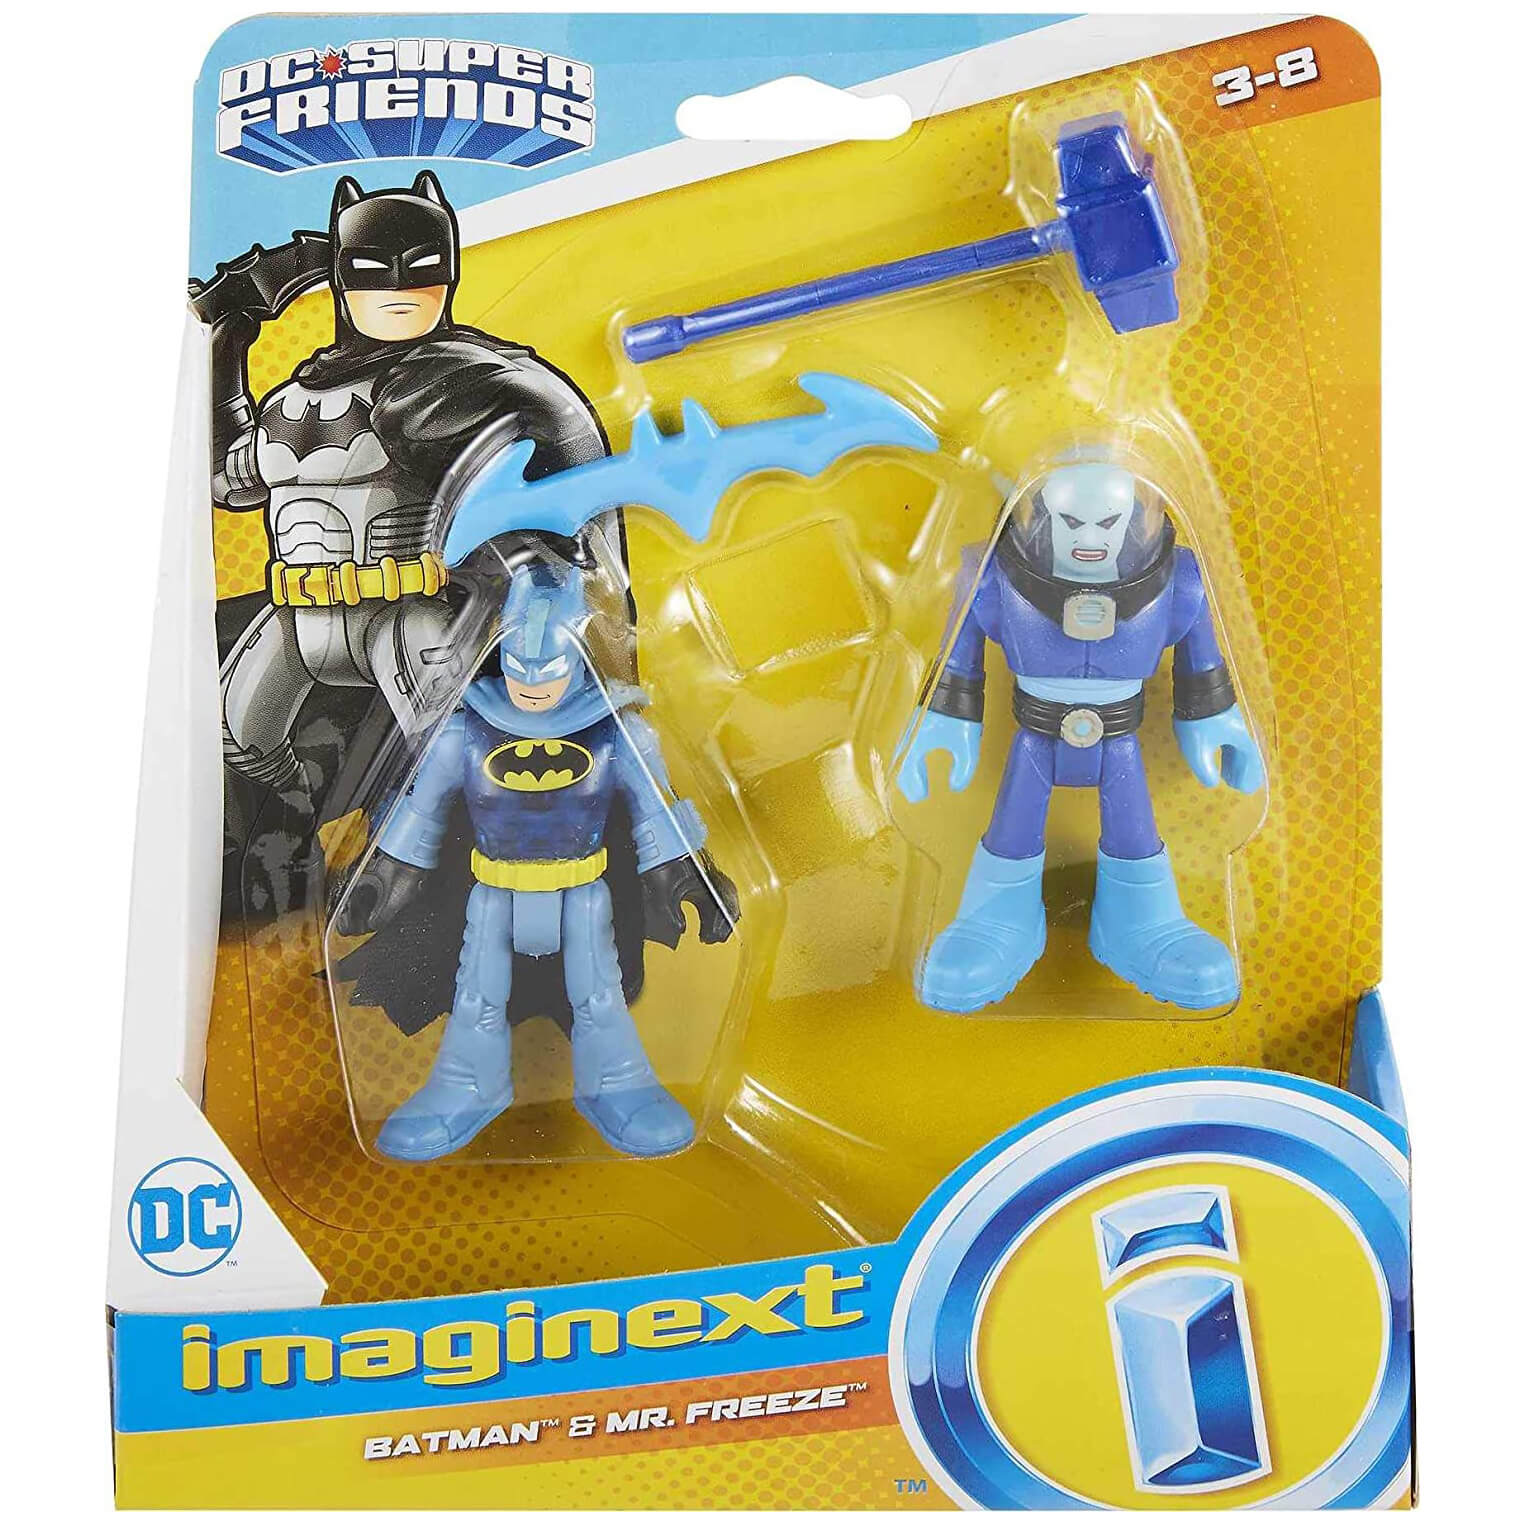 DC Super Friends Imaginext Batman & Mr. Freeze Figures